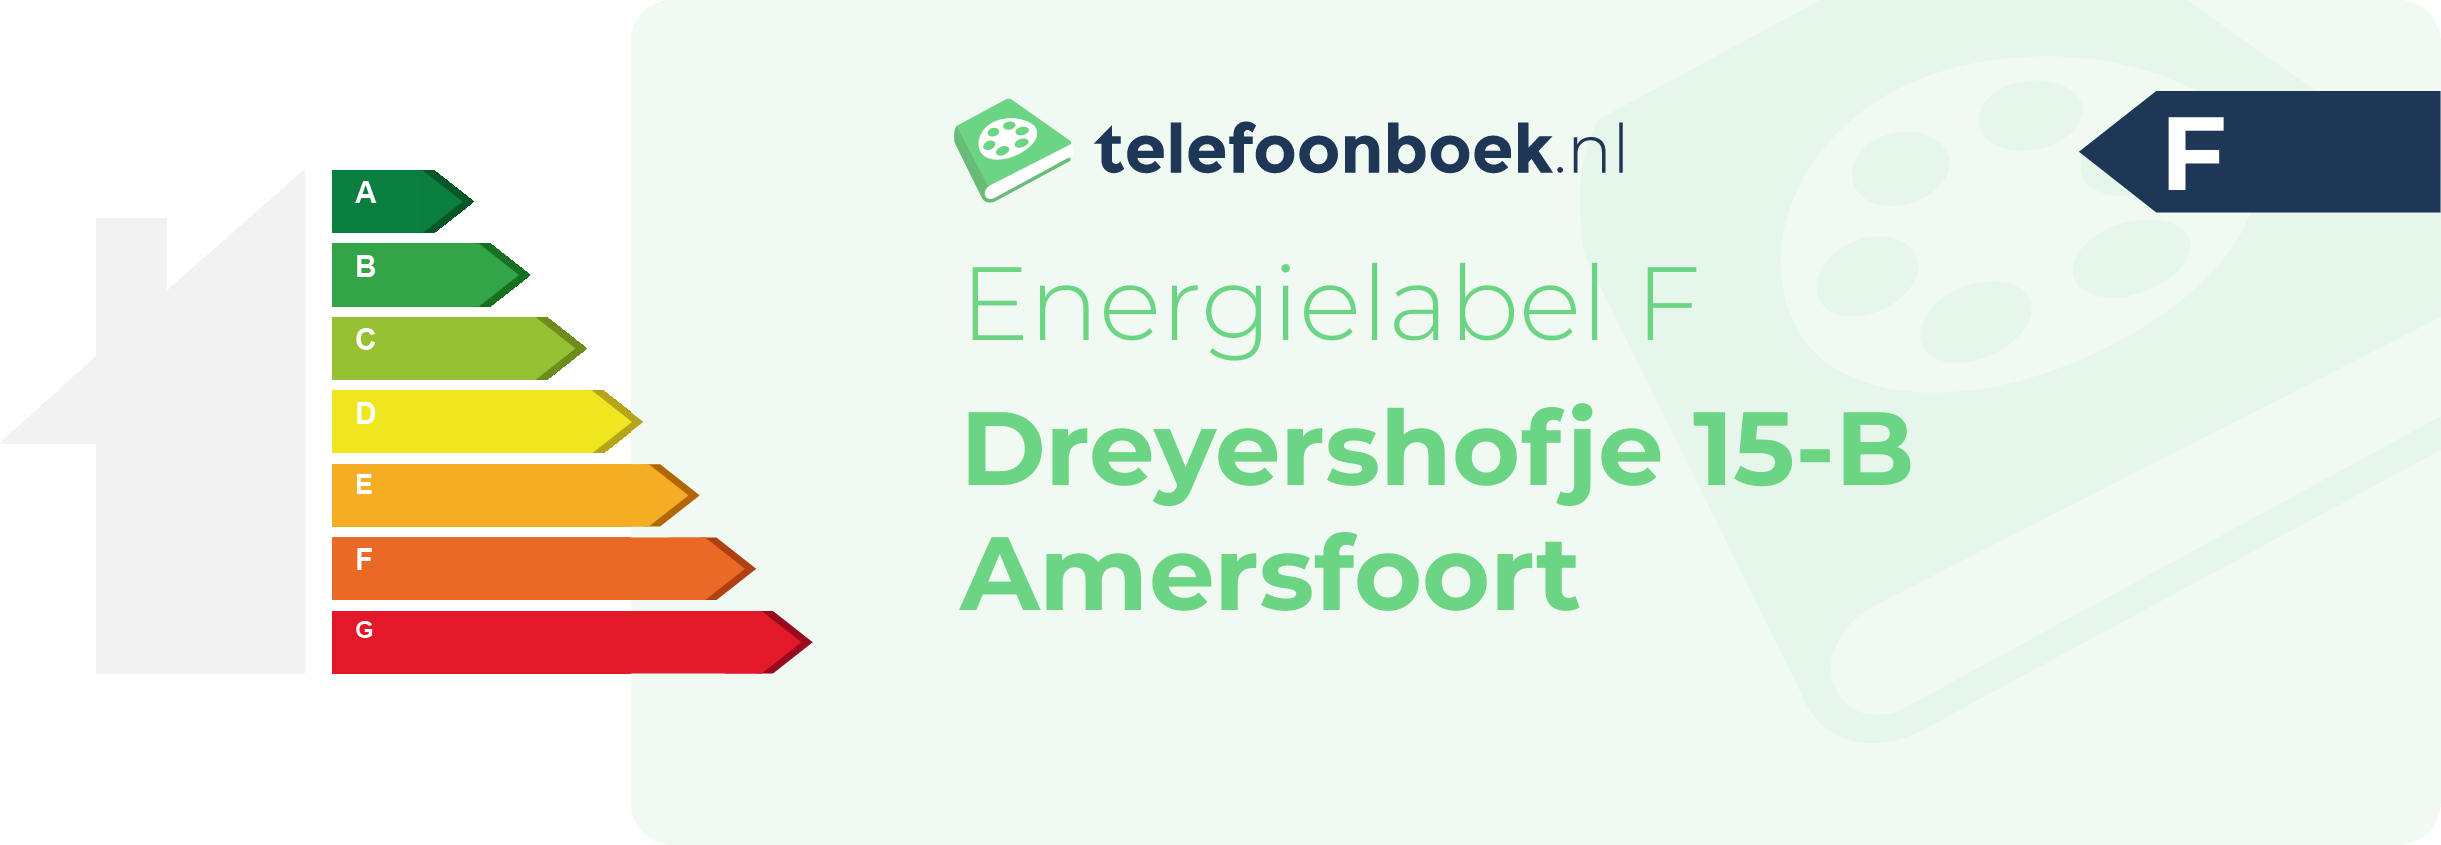 Energielabel Dreyershofje 15-B Amersfoort